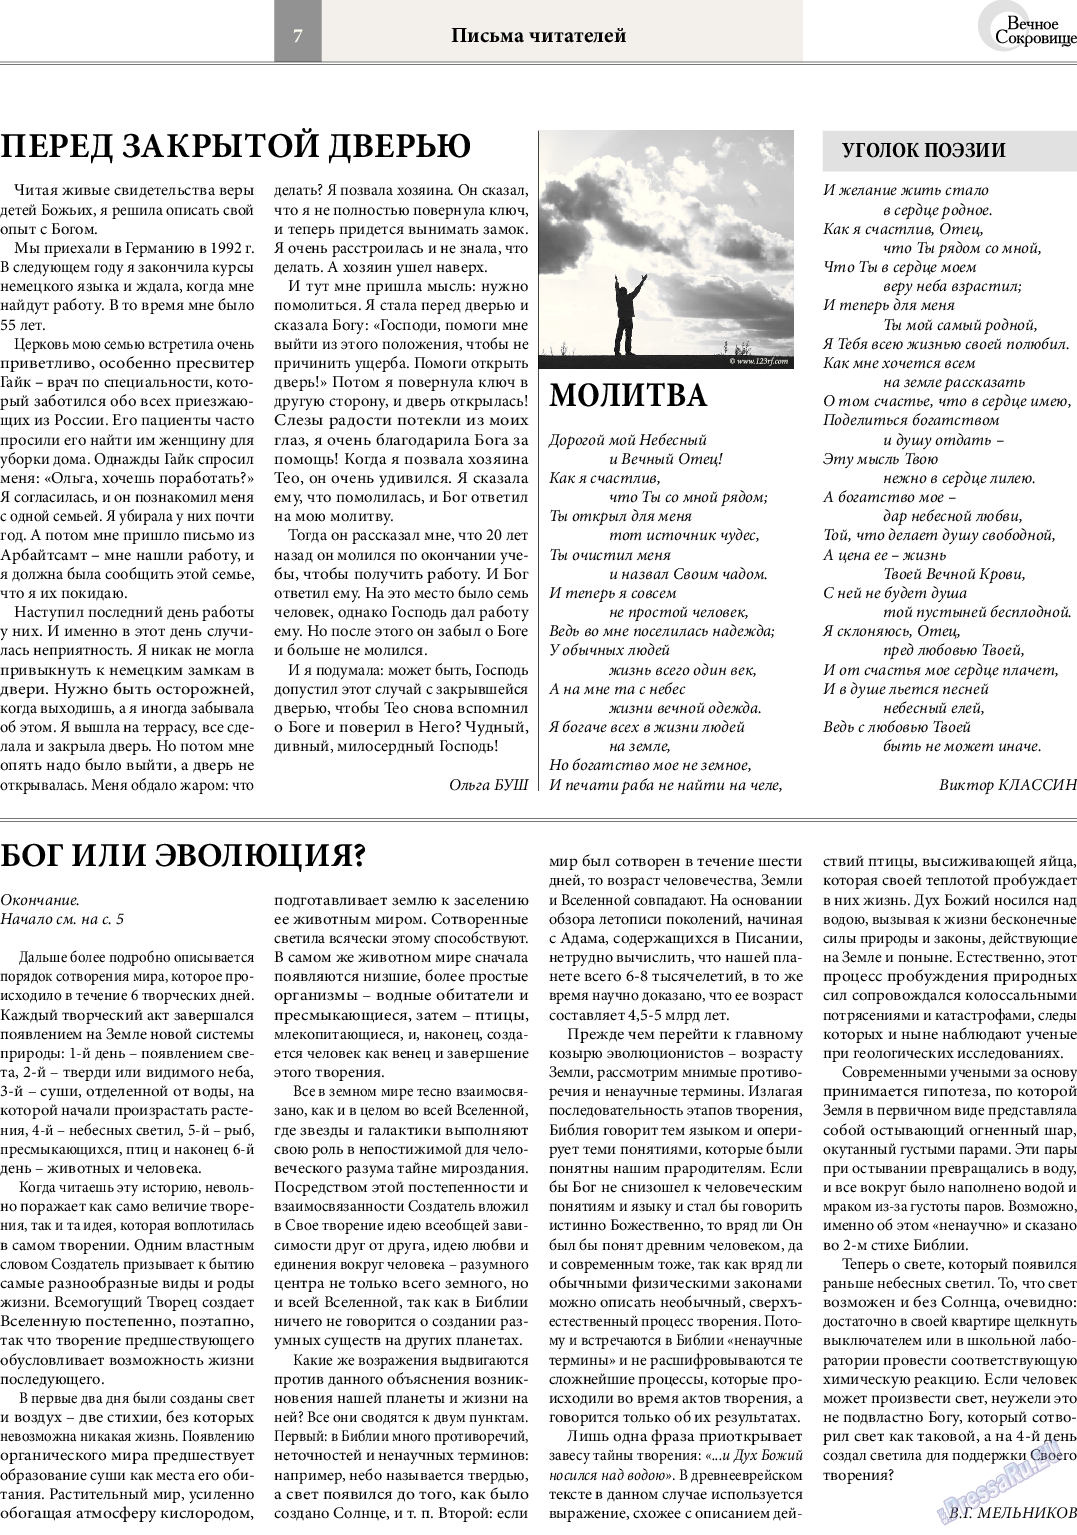 Вечное сокровище (газета). 2014 год, номер 4, стр. 7